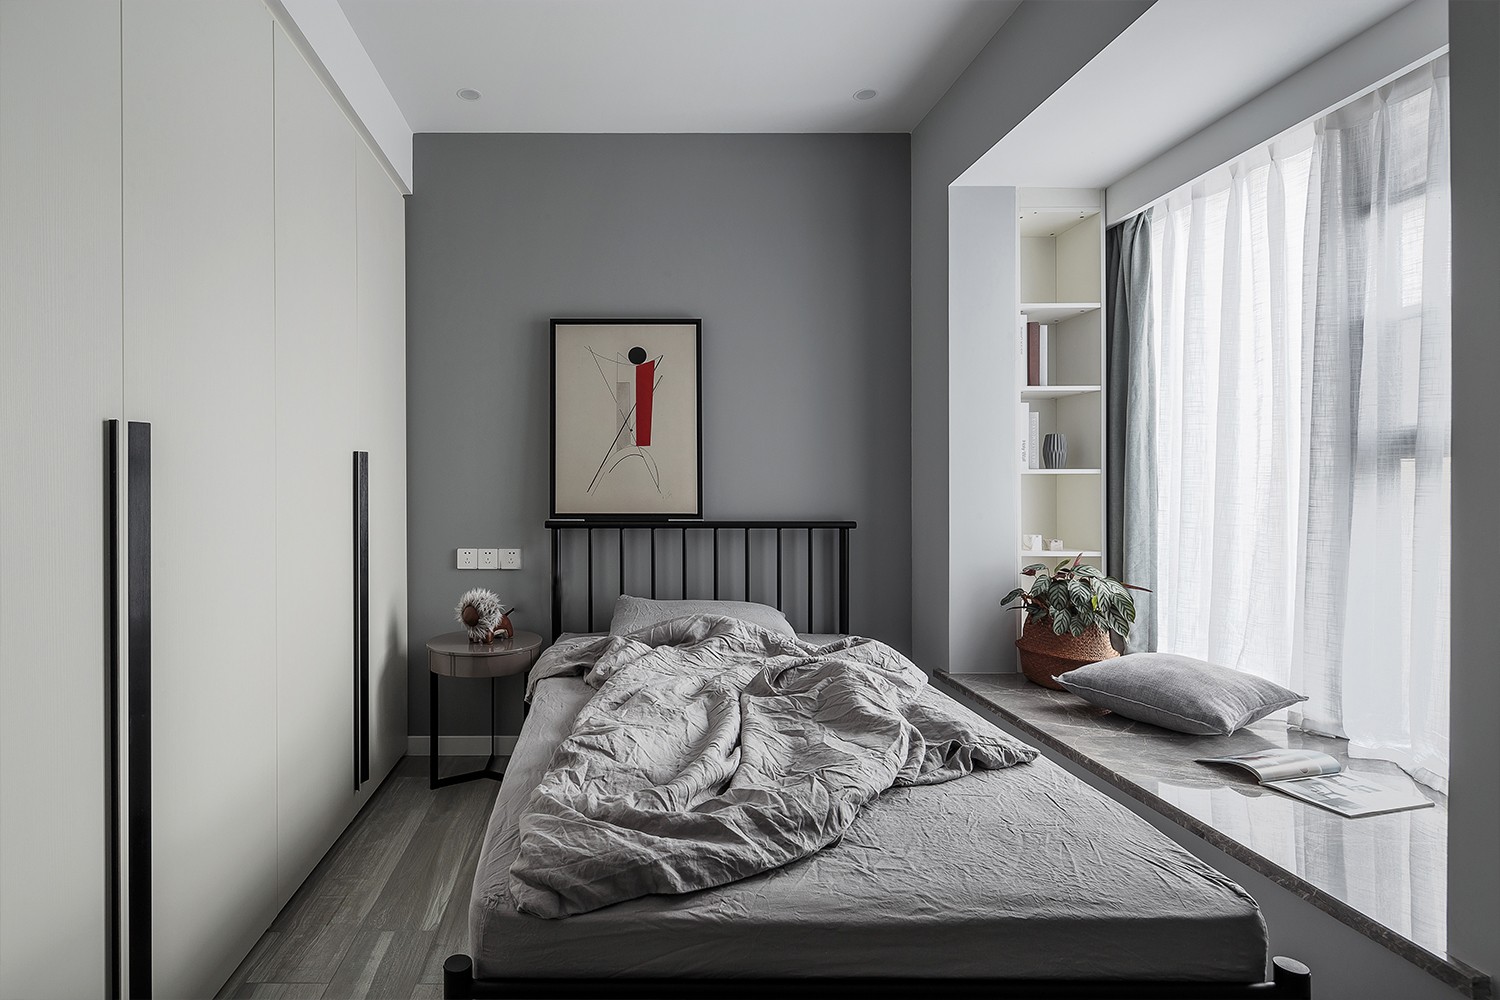 客厅 素净整洁的立面,哑光的灰色地砖,配合着现代简约的皮质沙发,奠定